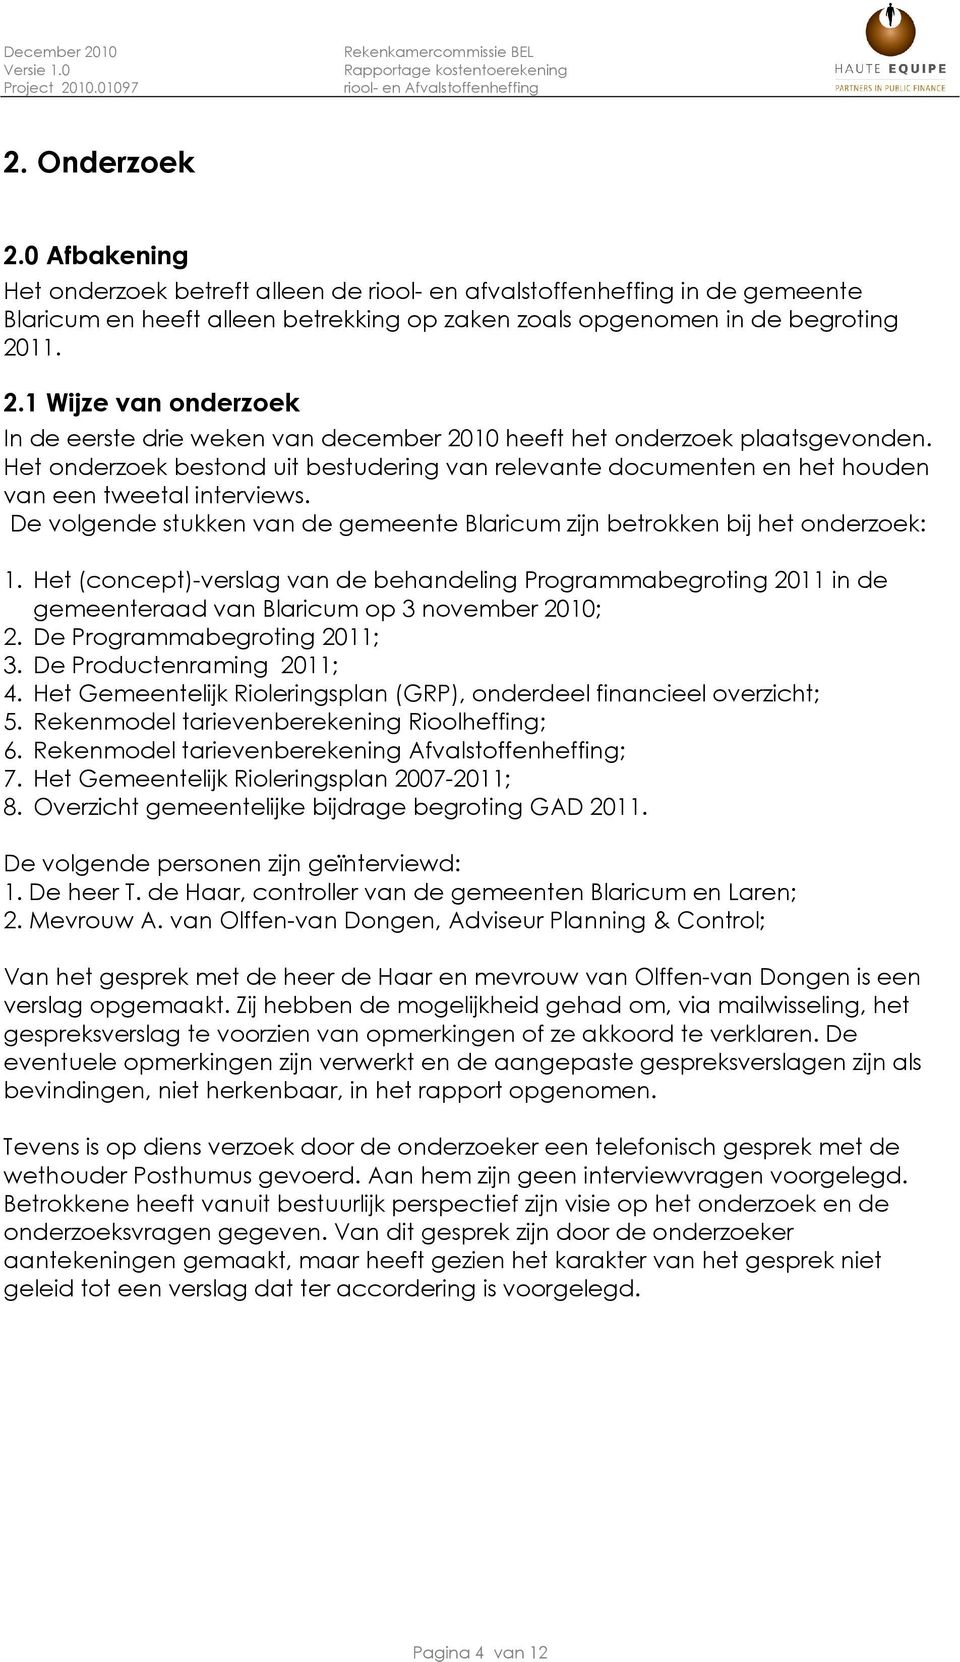 Het (concept)-verslag van de behandeling Programmabegroting 2011 in de gemeenteraad van Blaricum op 3 november 2010; 2. De Programmabegroting 2011; 3. De Productenraming 2011; 4.